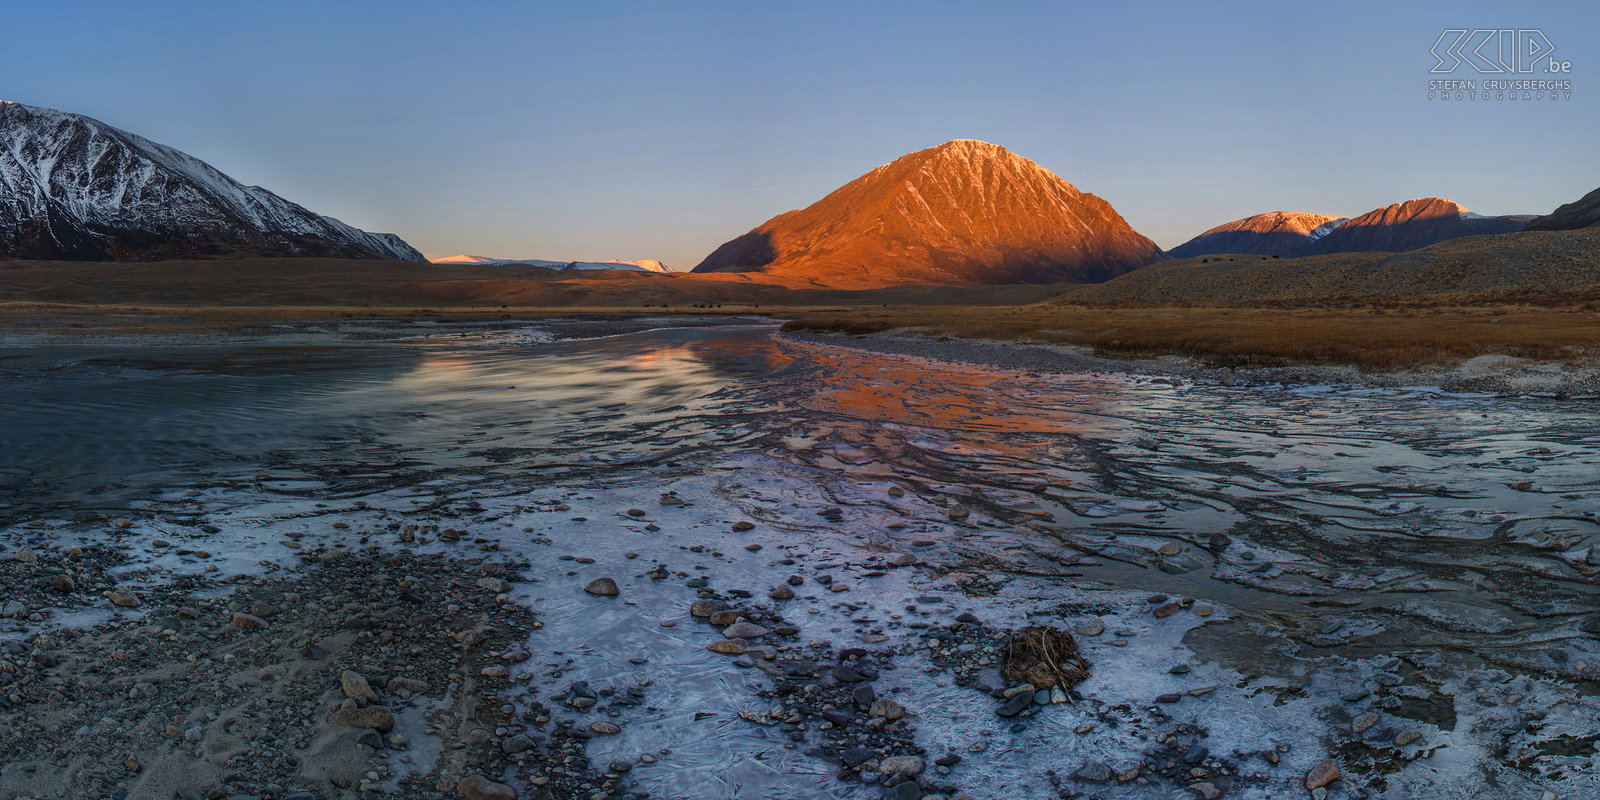 Altai Tavan Bogd - Zonsopgang Zonsopgang in het Altai gebergte in Mongolië dichtbij de grens met Rusland en China. Ik stond zeer vroeg op om wat foto’s met lange belichting van de rivier en het drijvende ijs te maken. De bergtoppen kregen een fantastische warme oranje kleur, maar het magische licht duurde slechts 5 minuten. Stefan Cruysberghs